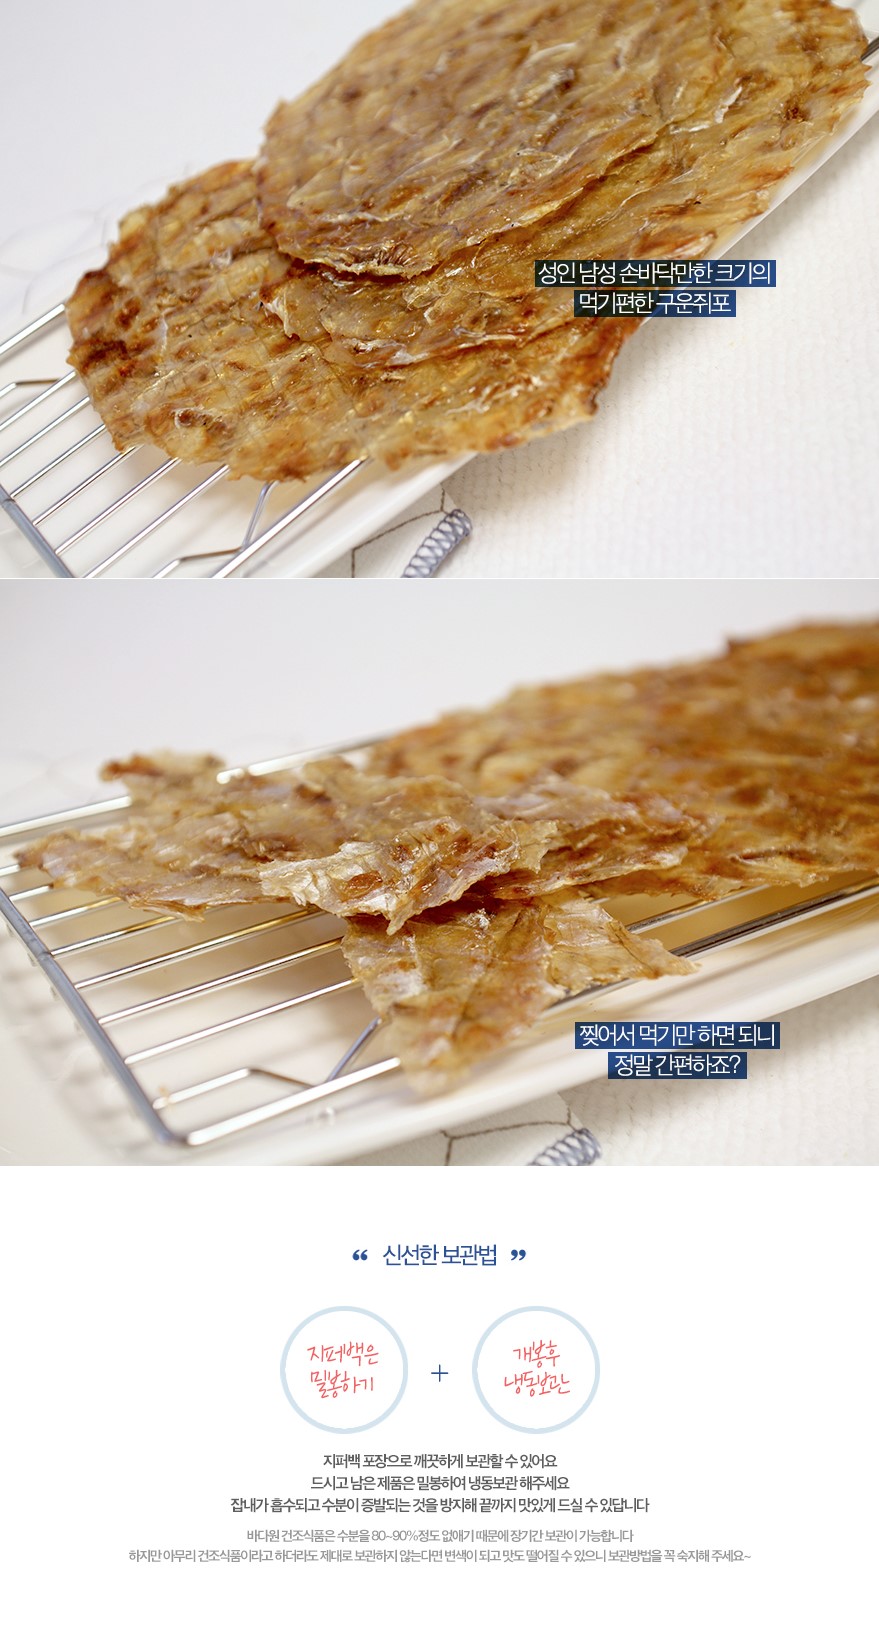 韓國食品-[Badaone] Roasted Dried Fish Filet 200g